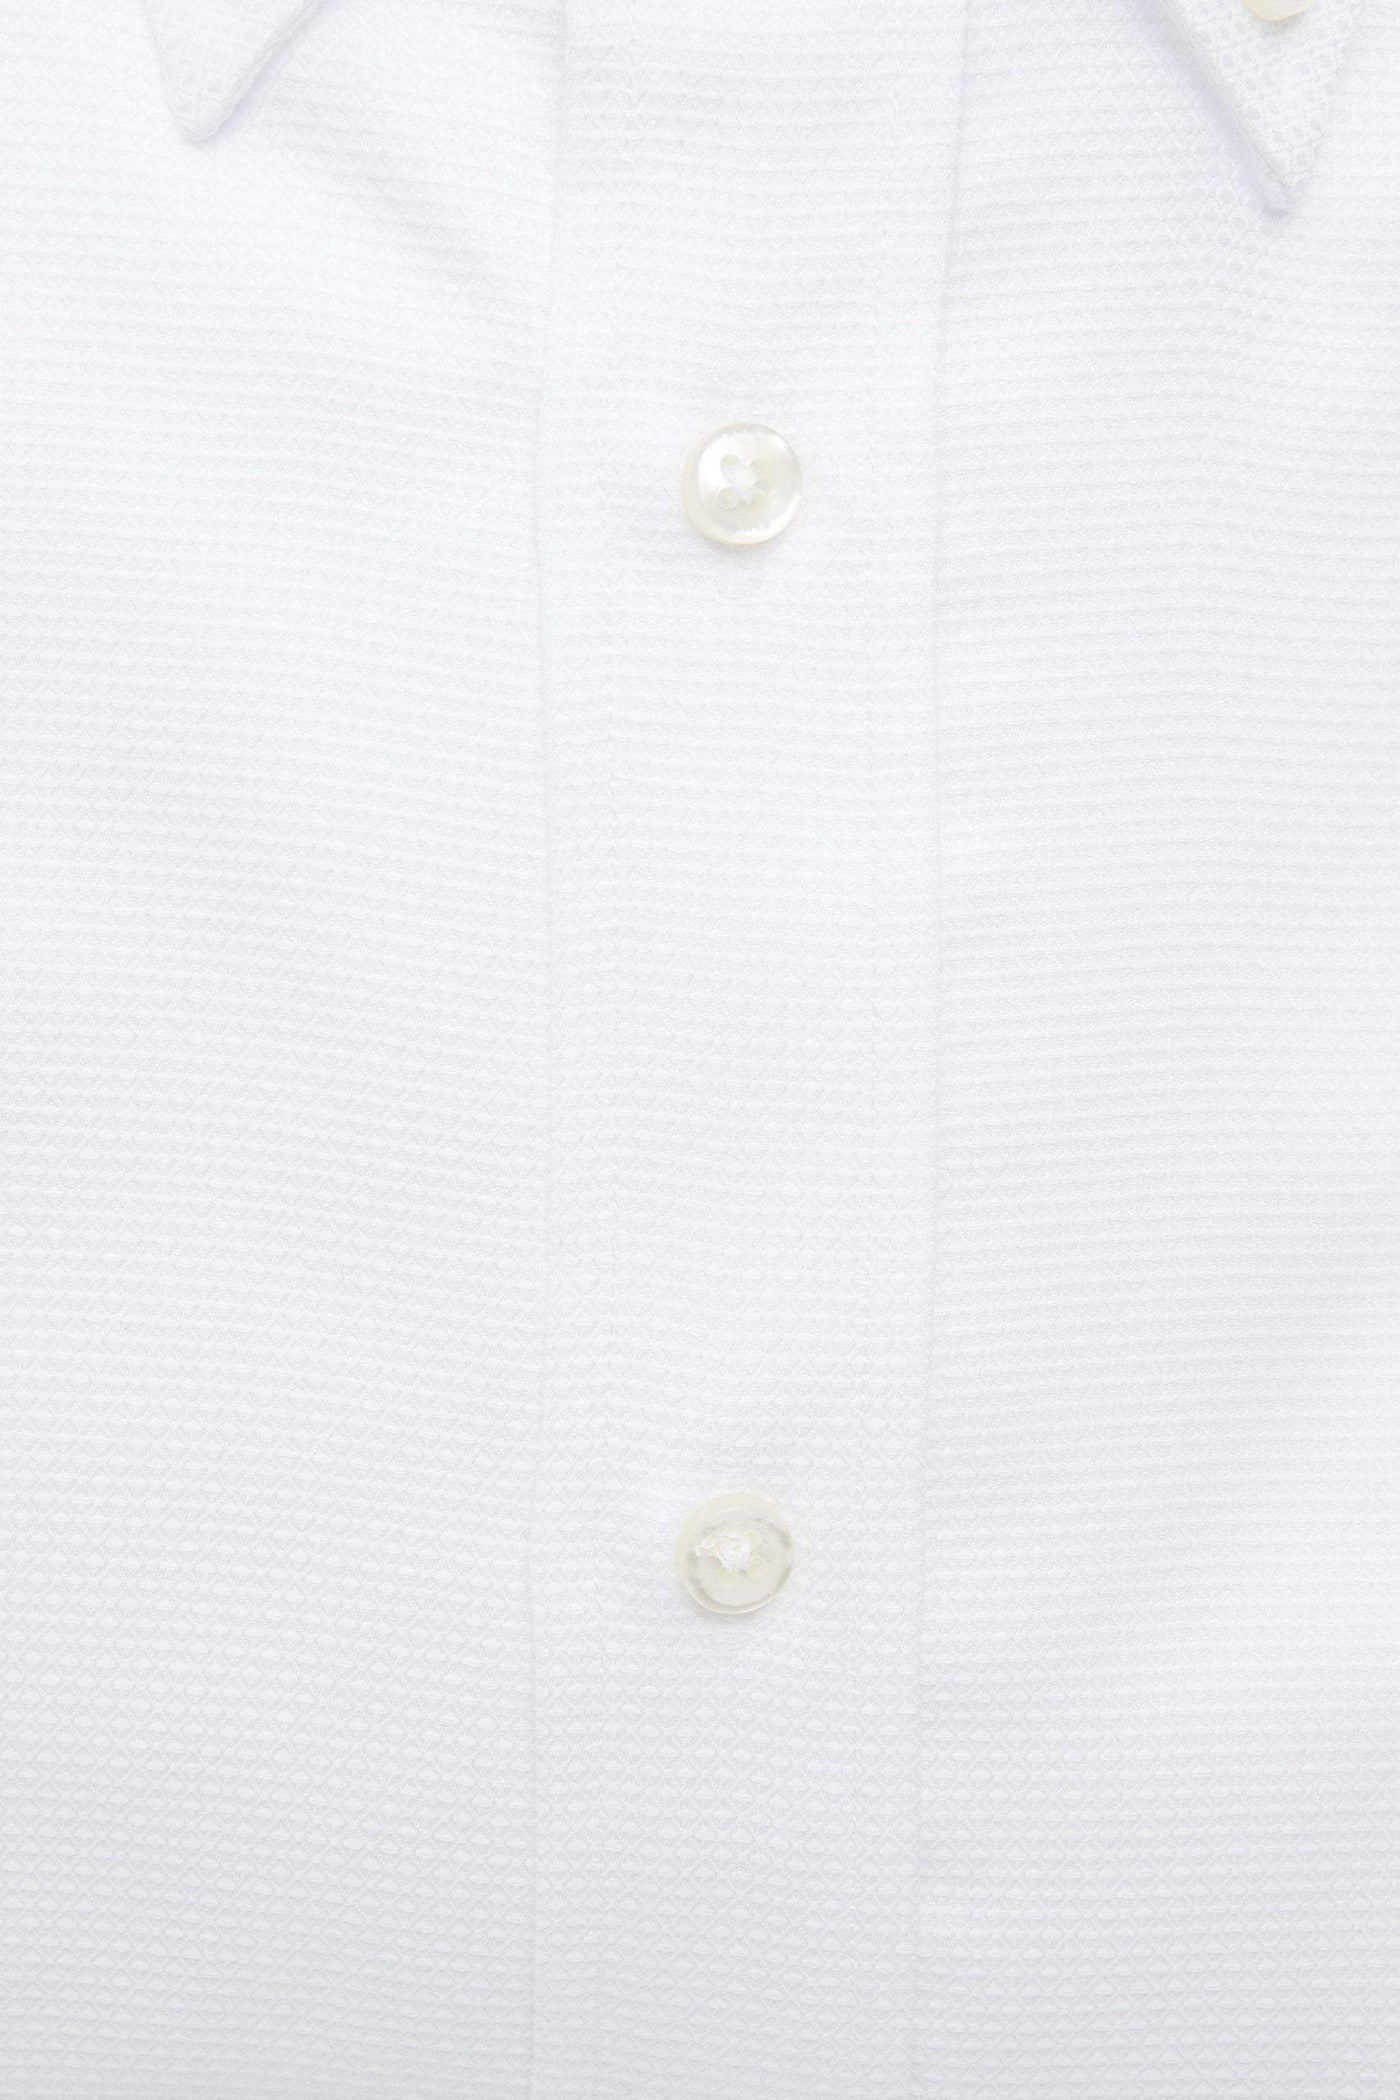 Robert Friedman White Cotton Shirt #men, feed-1, IT39 | S, IT40 | M, IT41 | L, IT42 | XL, IT43 | 2XL, IT44 | 3XL, Robert Friedman, Shirts - Men - Clothing, White at SEYMAYKA